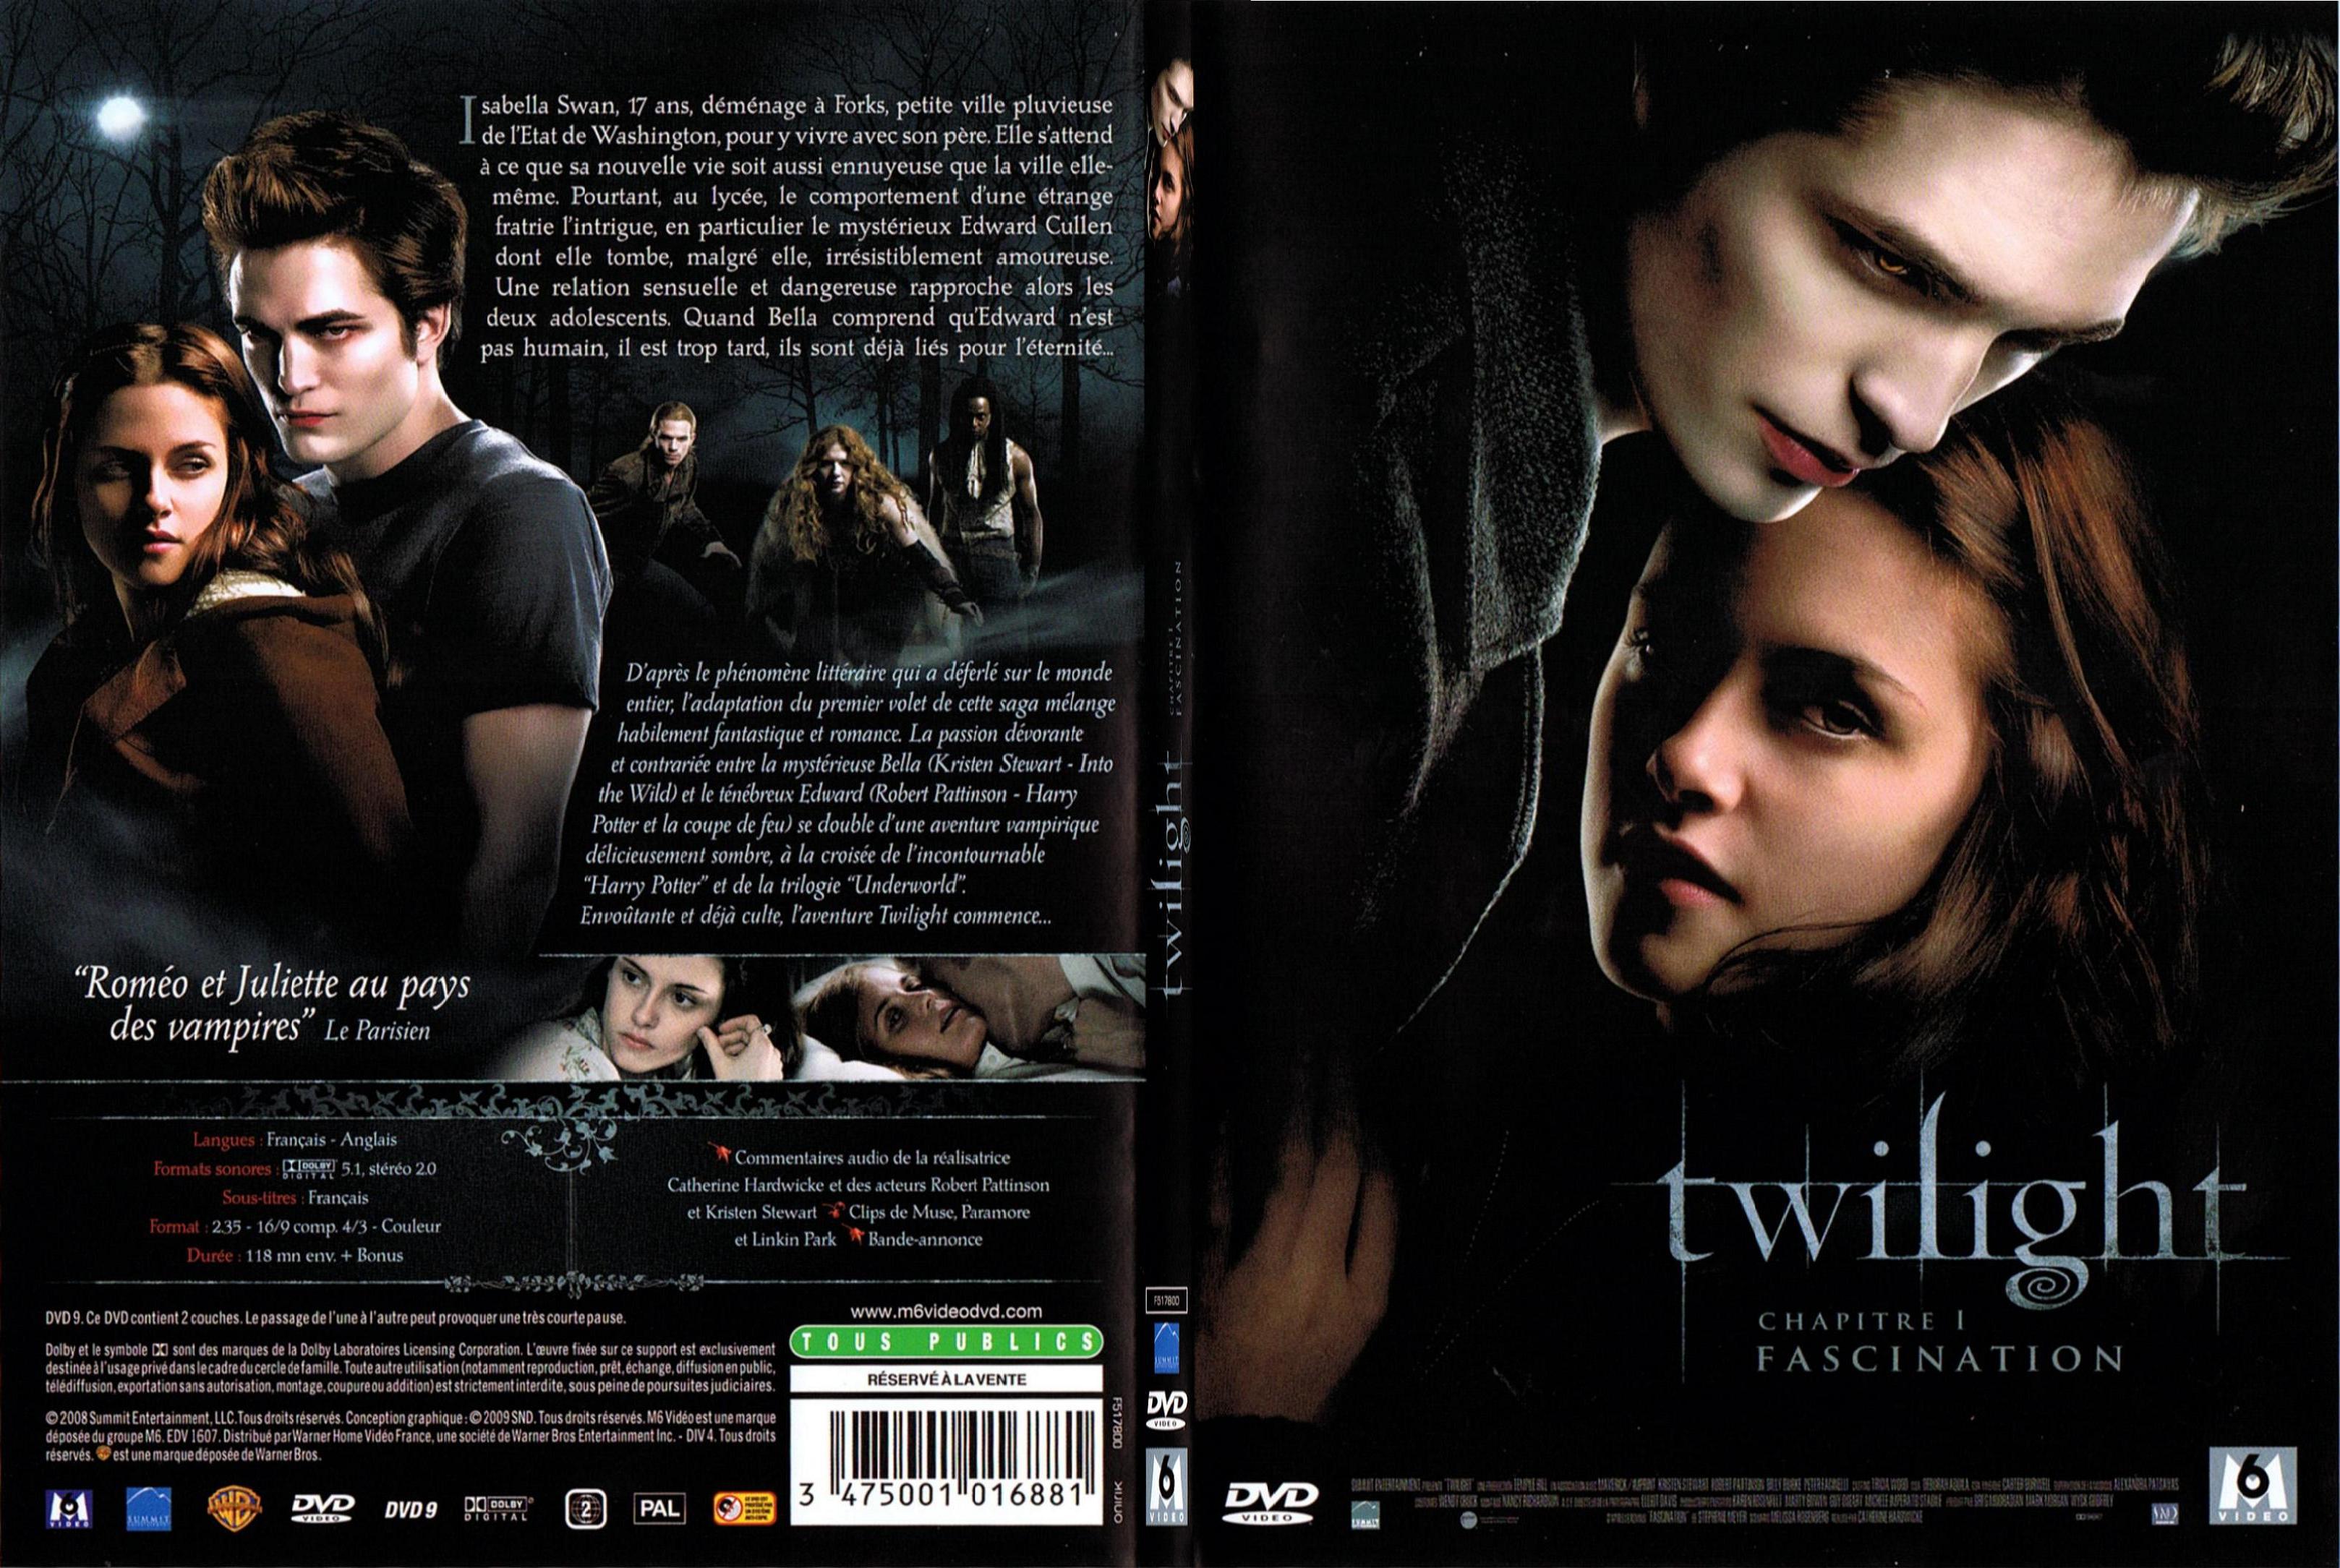 Jaquette DVD Twilight Chapitre 1 - Fascination - SLIM